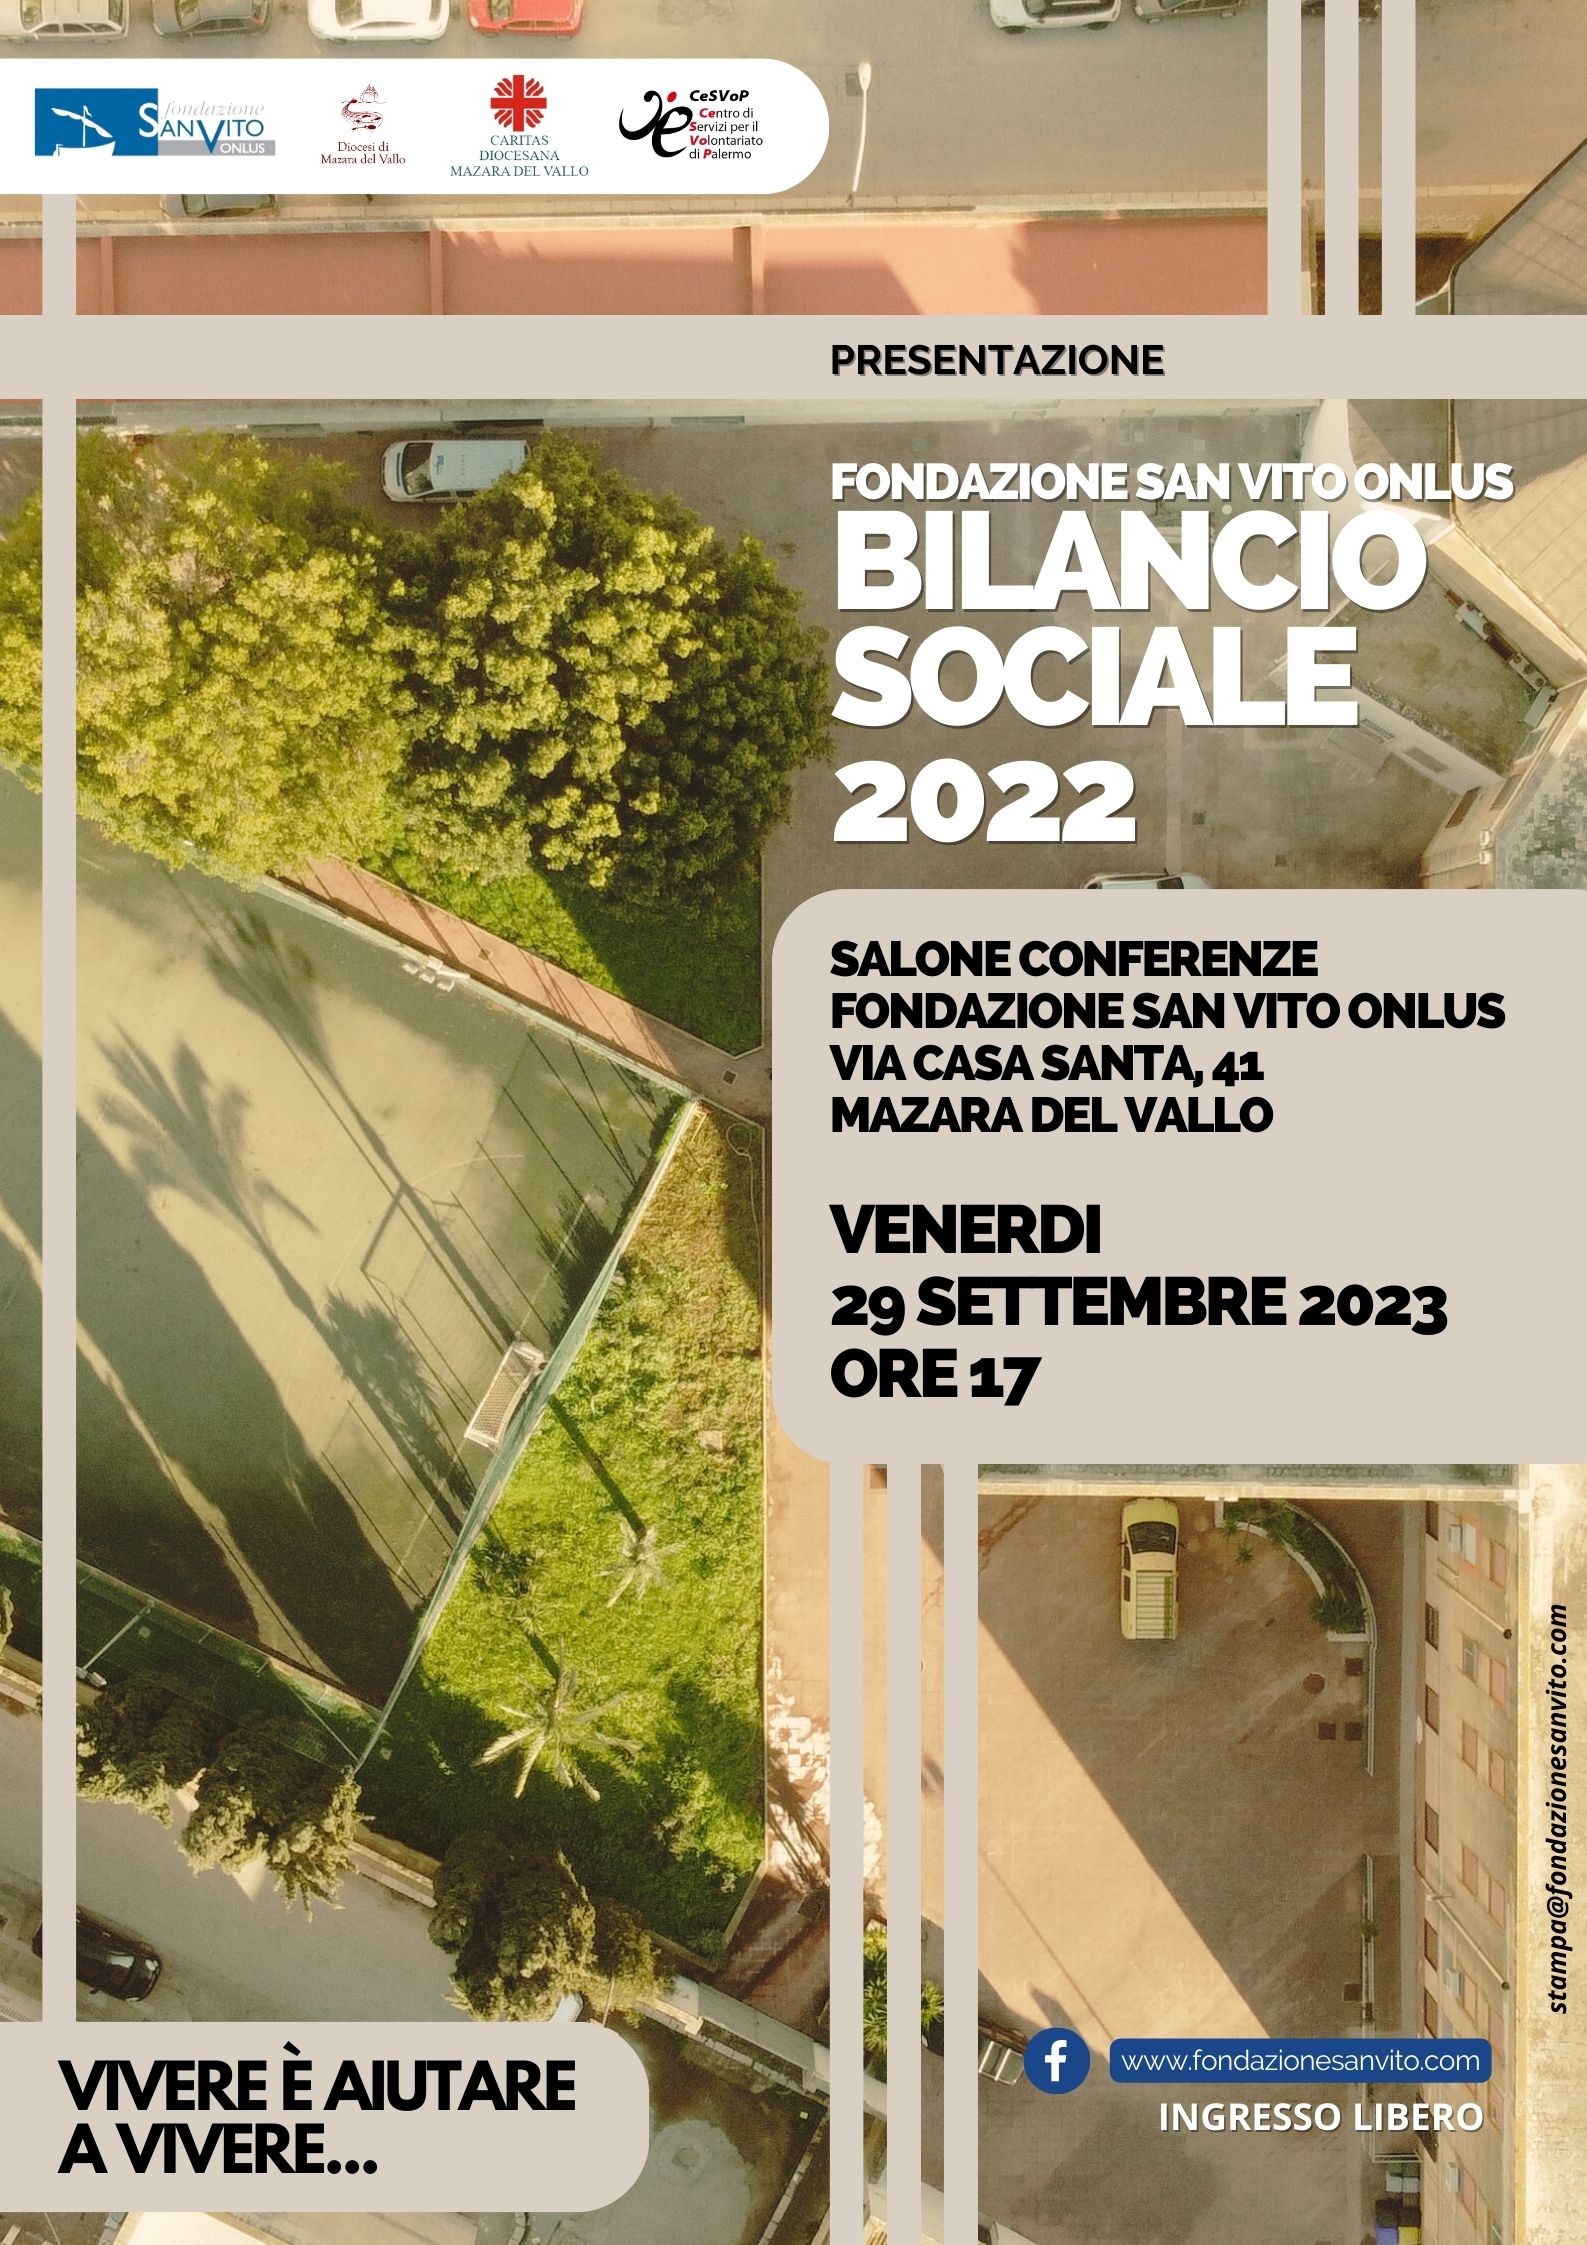 Domani presentazione del bilancio sociale della Fondazione “San Vito onlus”